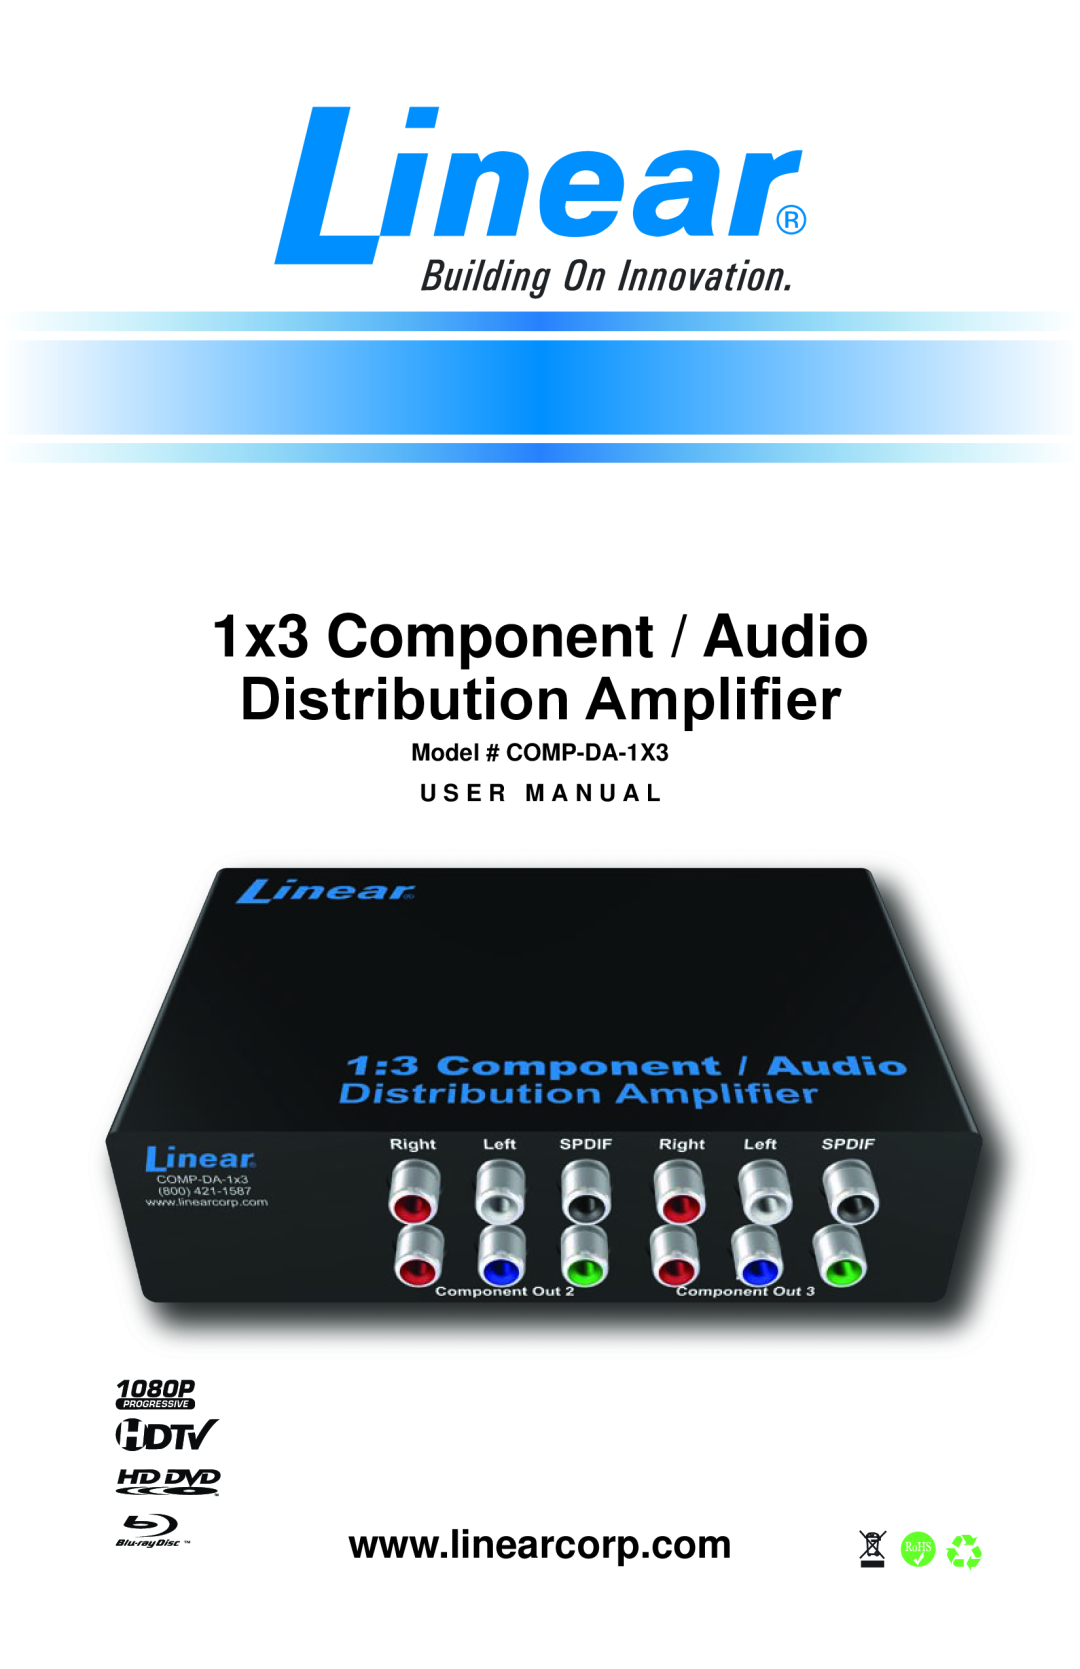 Linear user manual Model # COMP-DA-1X3 U S E R M A N U A L, 1x3 Component / Audio Distribution Amplifier 